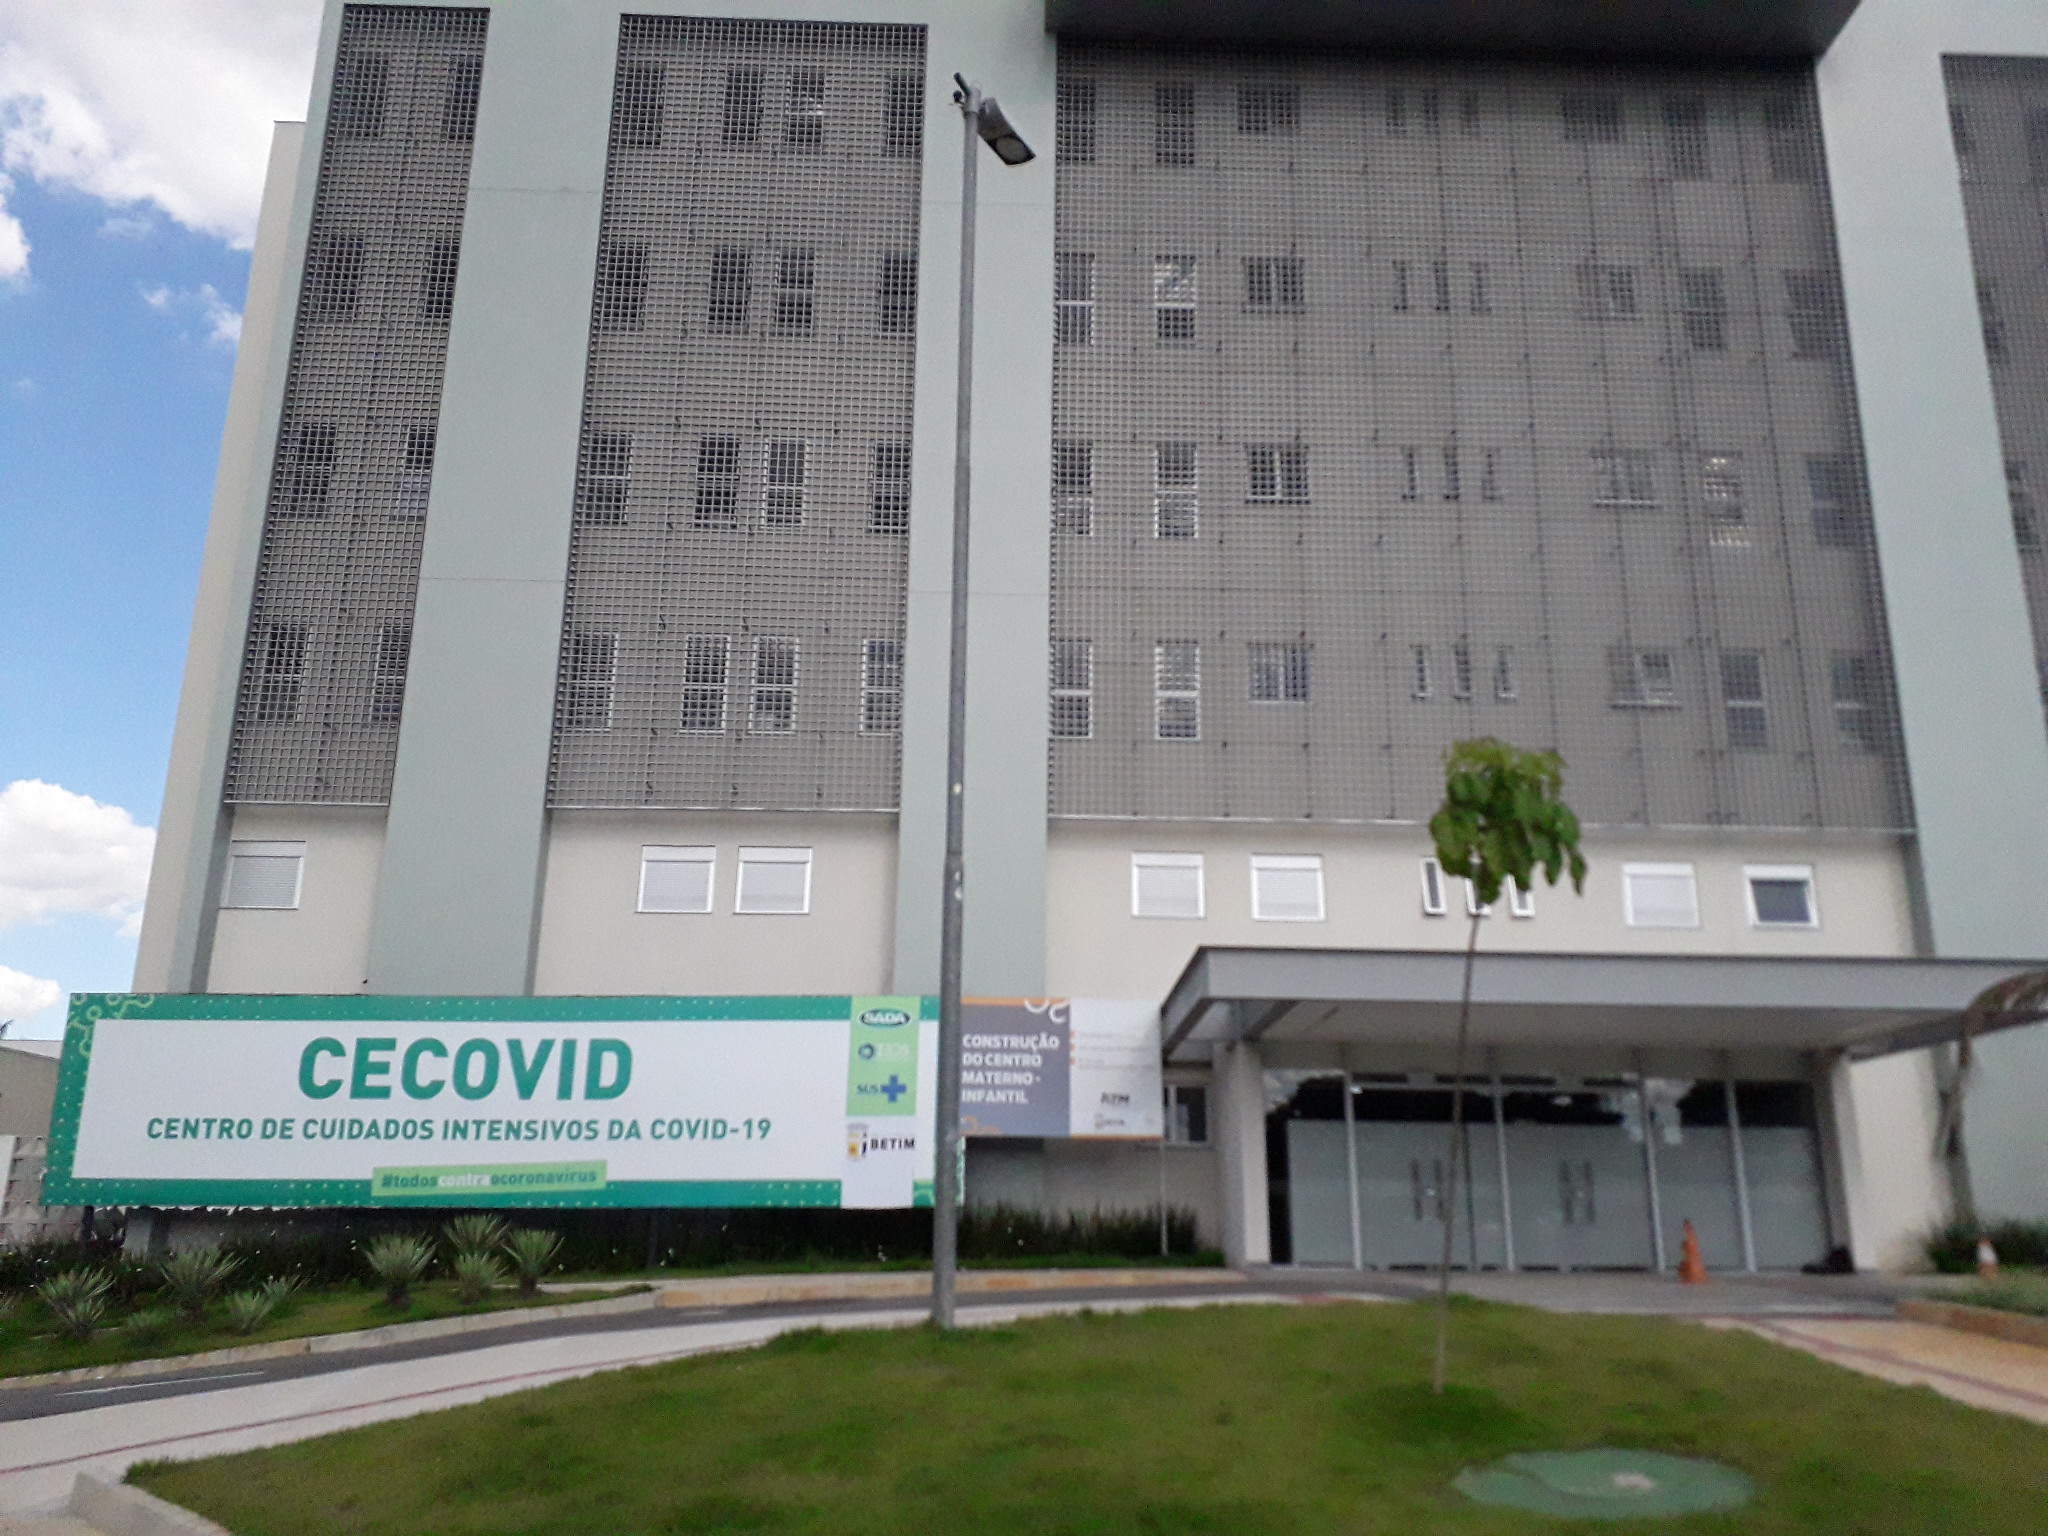 Fachada do Centro de Cuidados Intensivos para Covid-19 em Betim